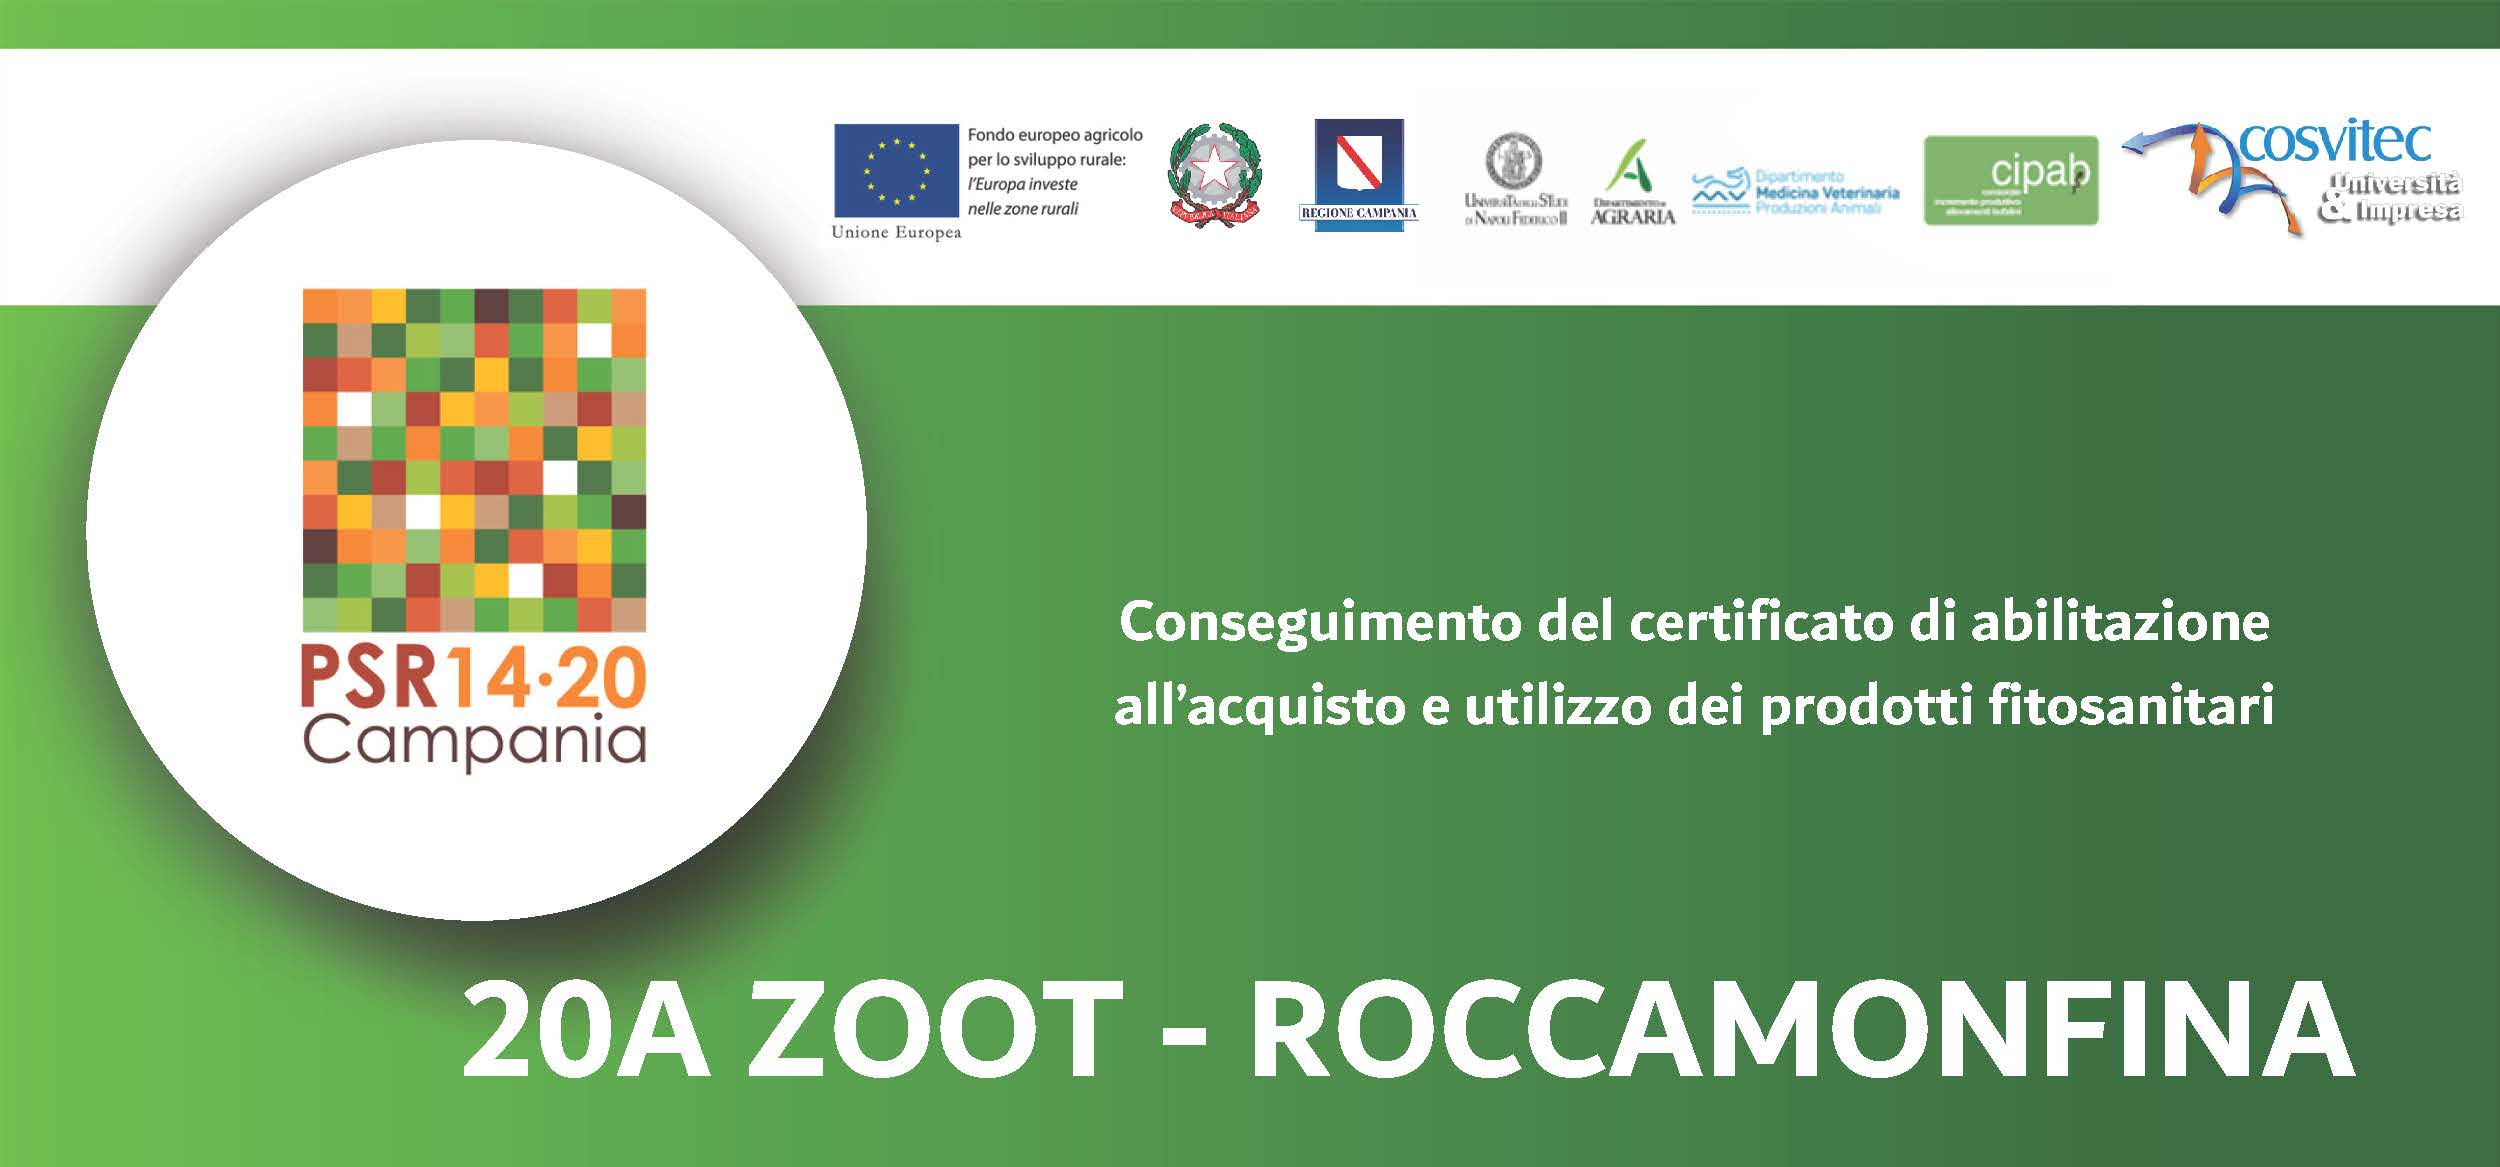 Conseguimento del certificato di abilitazione all’acquisto e utilizzo dei prodotti fitosanitari | 20A ZOOT – Roccamonfina